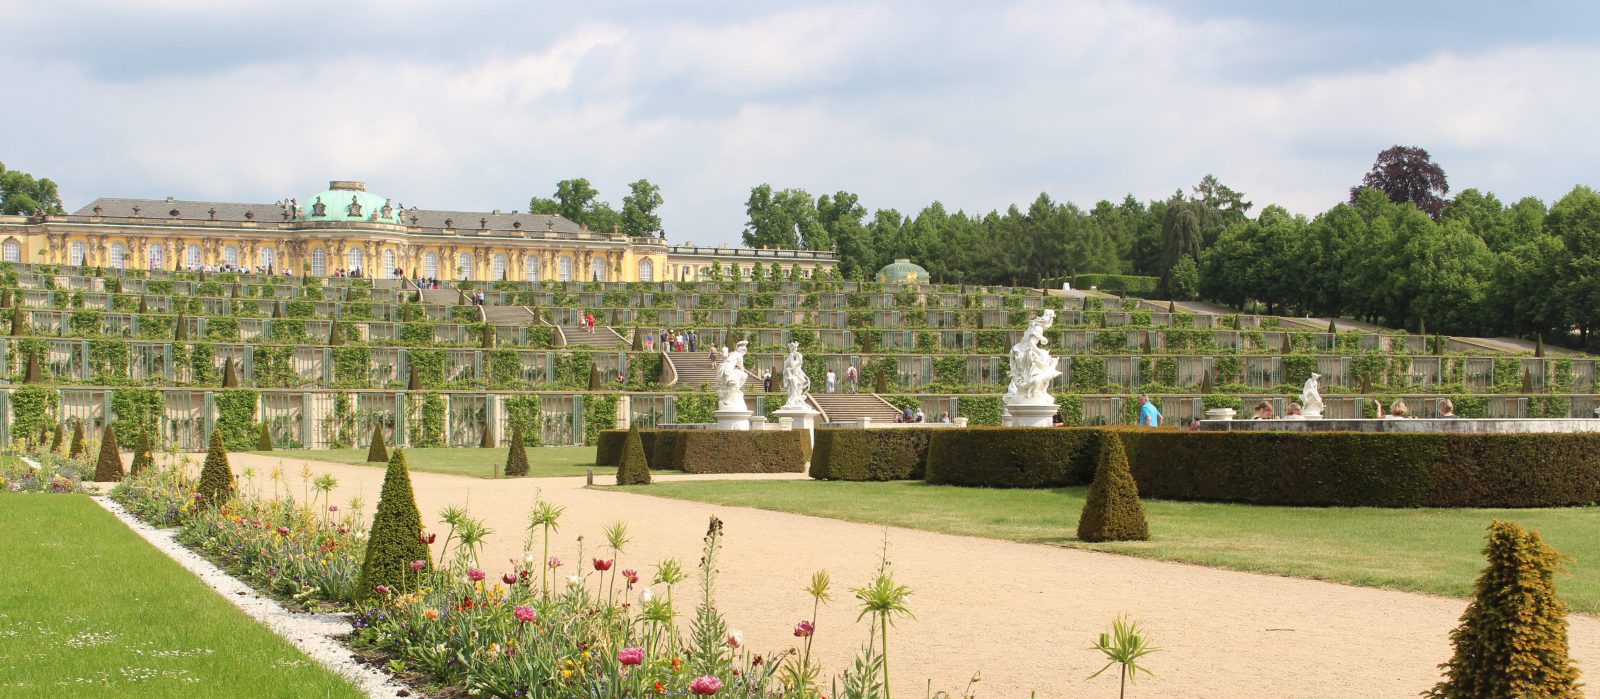 Potsdam sans-souci palais et jardin